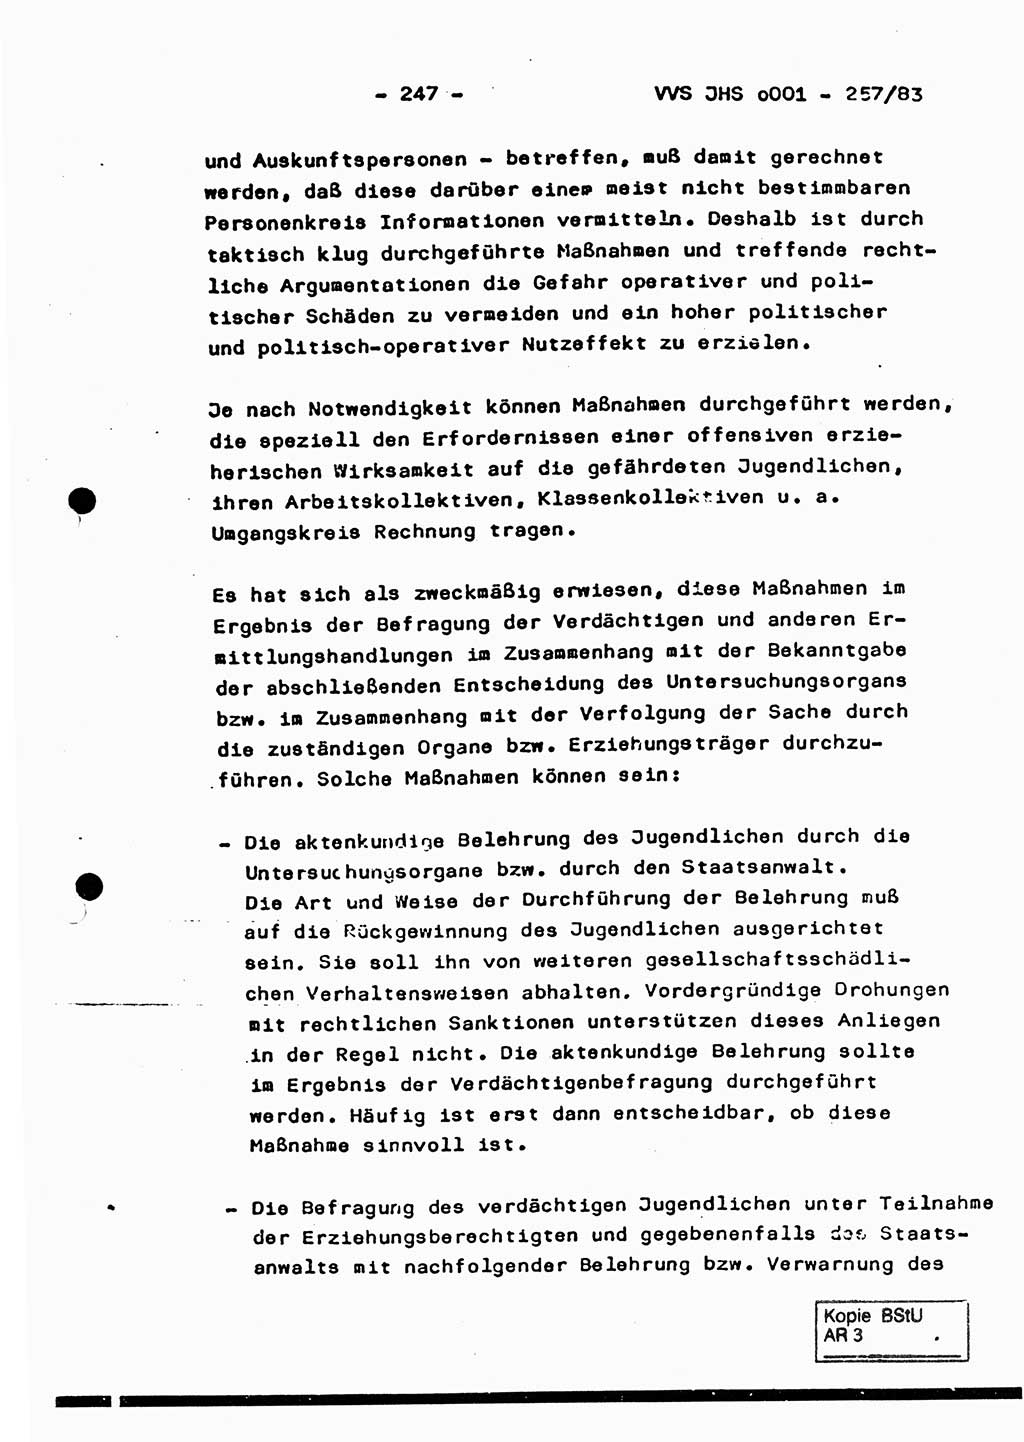 Dissertation, Oberst Helmut Lubas (BV Mdg.), Oberstleutnant Manfred Eschberger (HA IX), Oberleutnant Hans-Jürgen Ludwig (JHS), Ministerium für Staatssicherheit (MfS) [Deutsche Demokratische Republik (DDR)], Juristische Hochschule (JHS), Vertrauliche Verschlußsache (VVS) o001-257/83, Potsdam 1983, Seite 247 (Diss. MfS DDR JHS VVS o001-257/83 1983, S. 247)